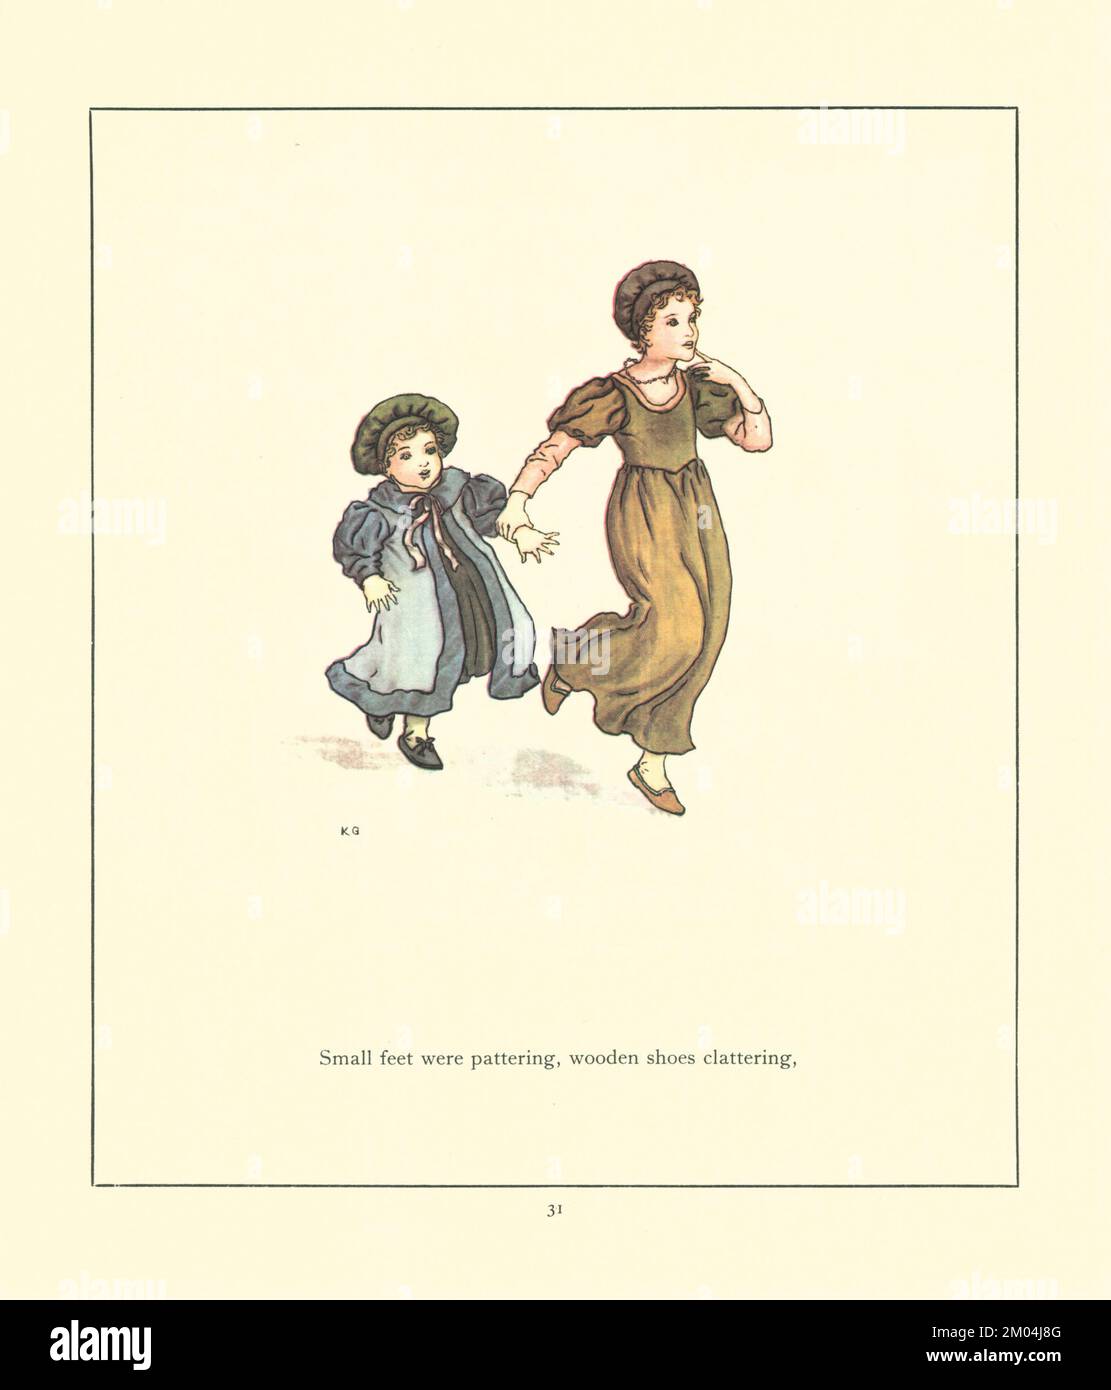 Kleine Füße quetschten, Holzschuhe klapperten, illustriert von KATE GREENAWAY (1846-1901) englischer Künstlerin und Schriftstellerin. For the Rattenfänger of Hamelin von Robert Browning, 1812-1889 Veröffentlicht von Warne 1910 Stockfoto